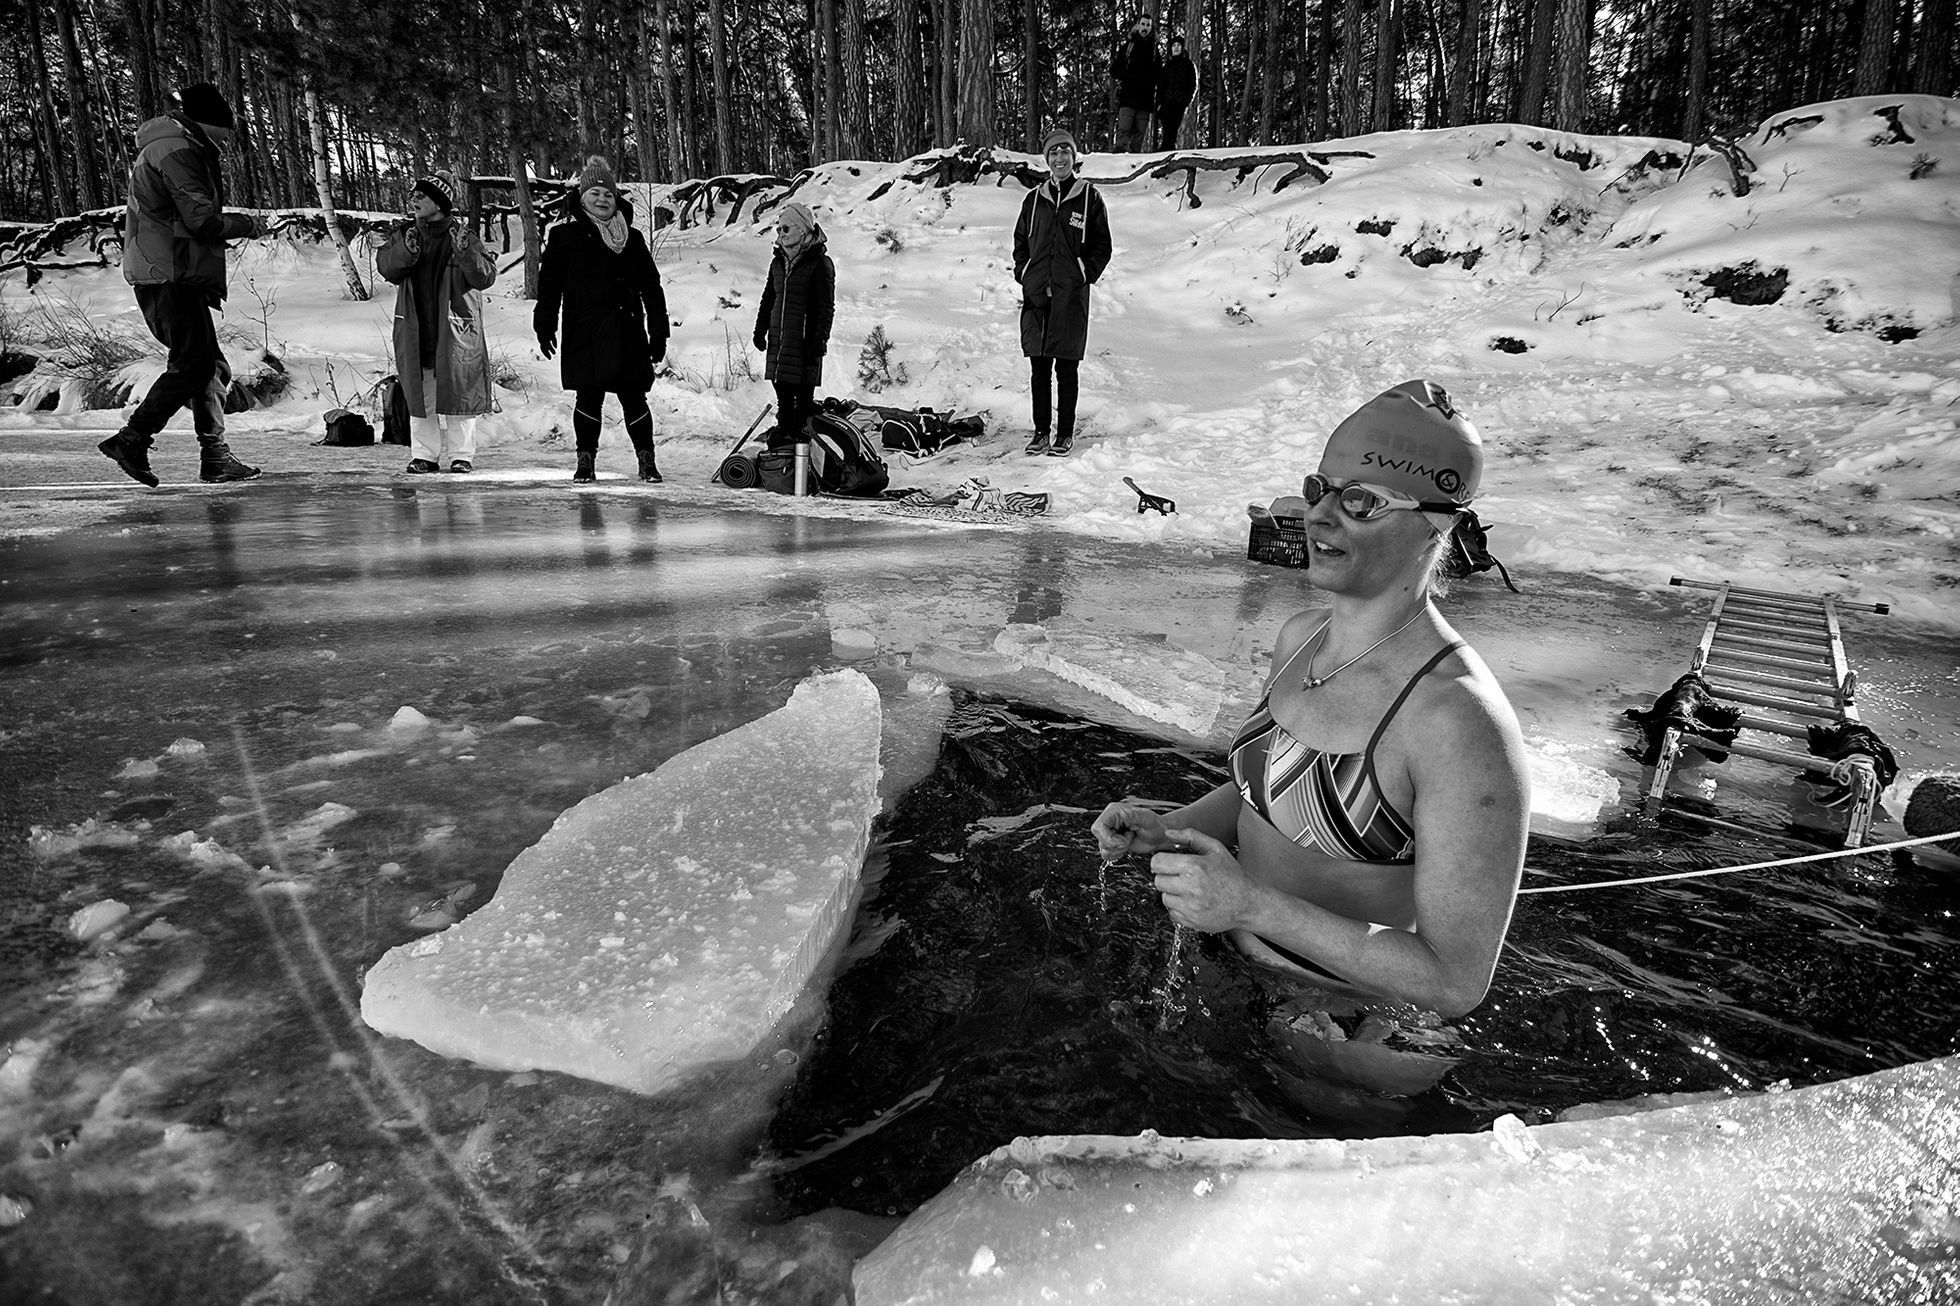 Letošní tuhé mrazy umožnily členům největšího otužileckého klubu v Česku (I. PKO Praha) vyzkoušet si plavání pod ledem. Vybrali si k tomu zamrzlé jezero Lhota u Brandýsa nad Labem.